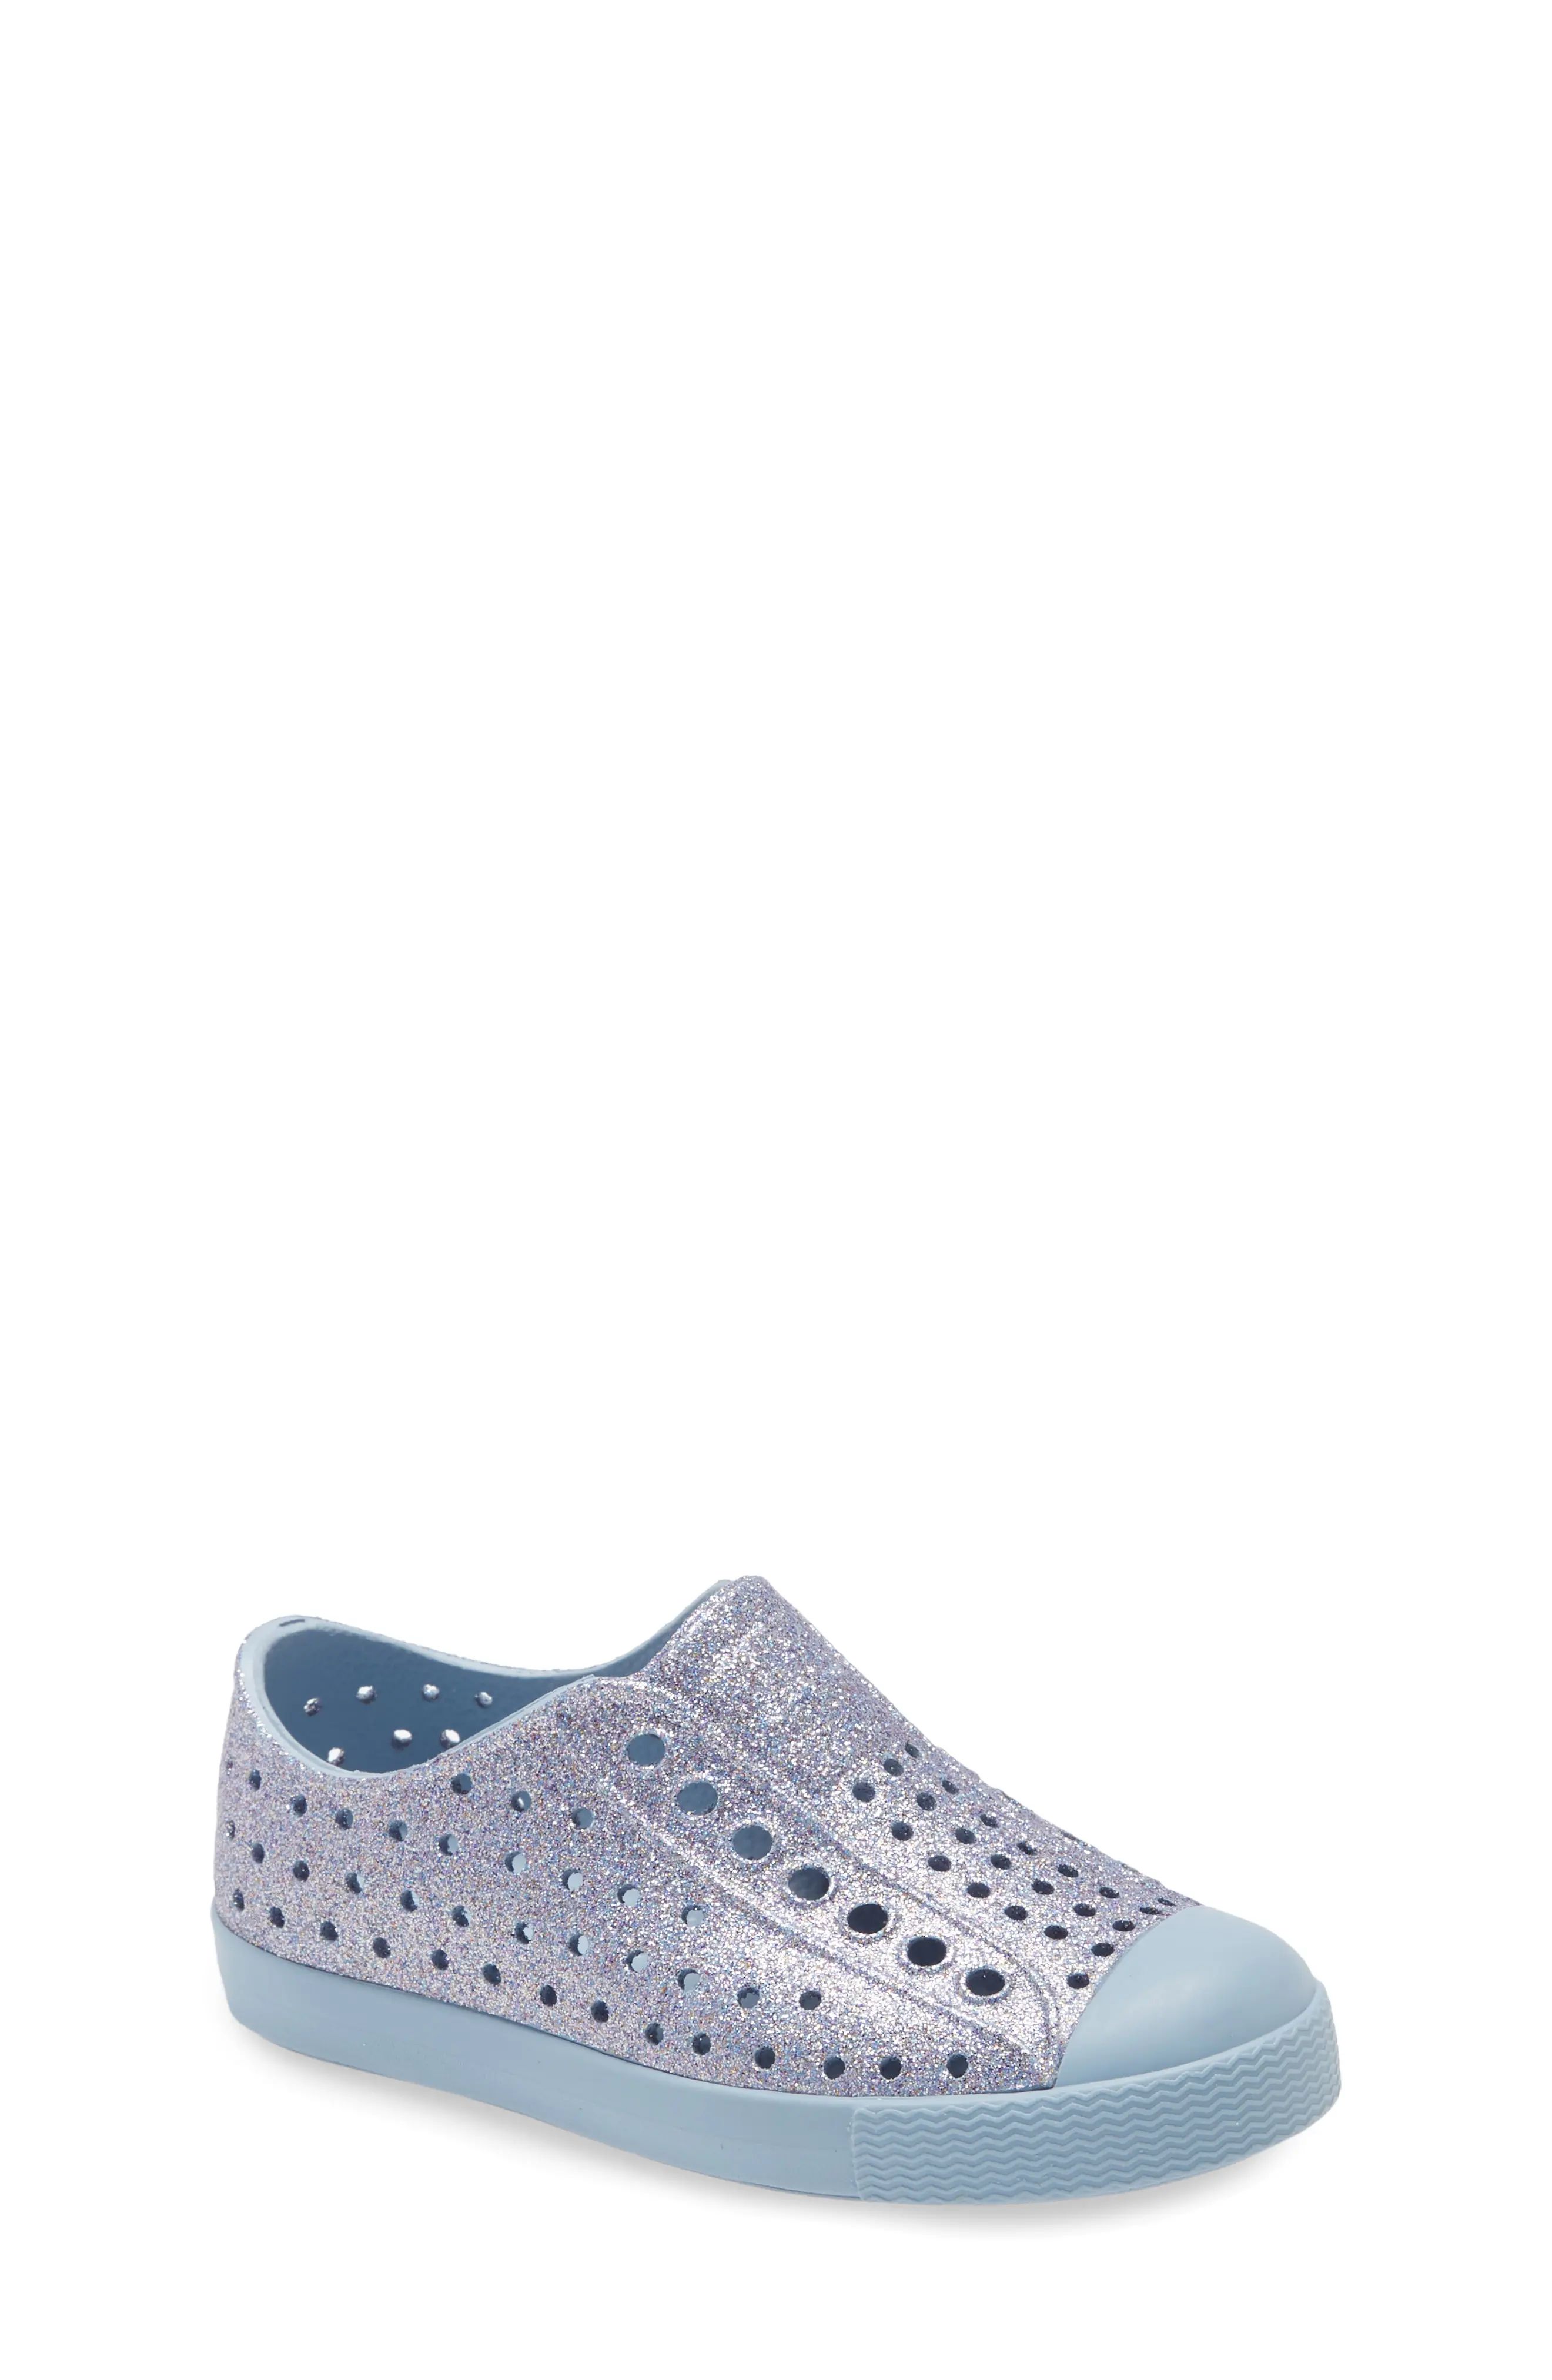 Toddler Girl's Native Shoes Jefferson Bling Glitter Slip-On Vegan Sneaker, Size 8 M - Blue | Nordstrom